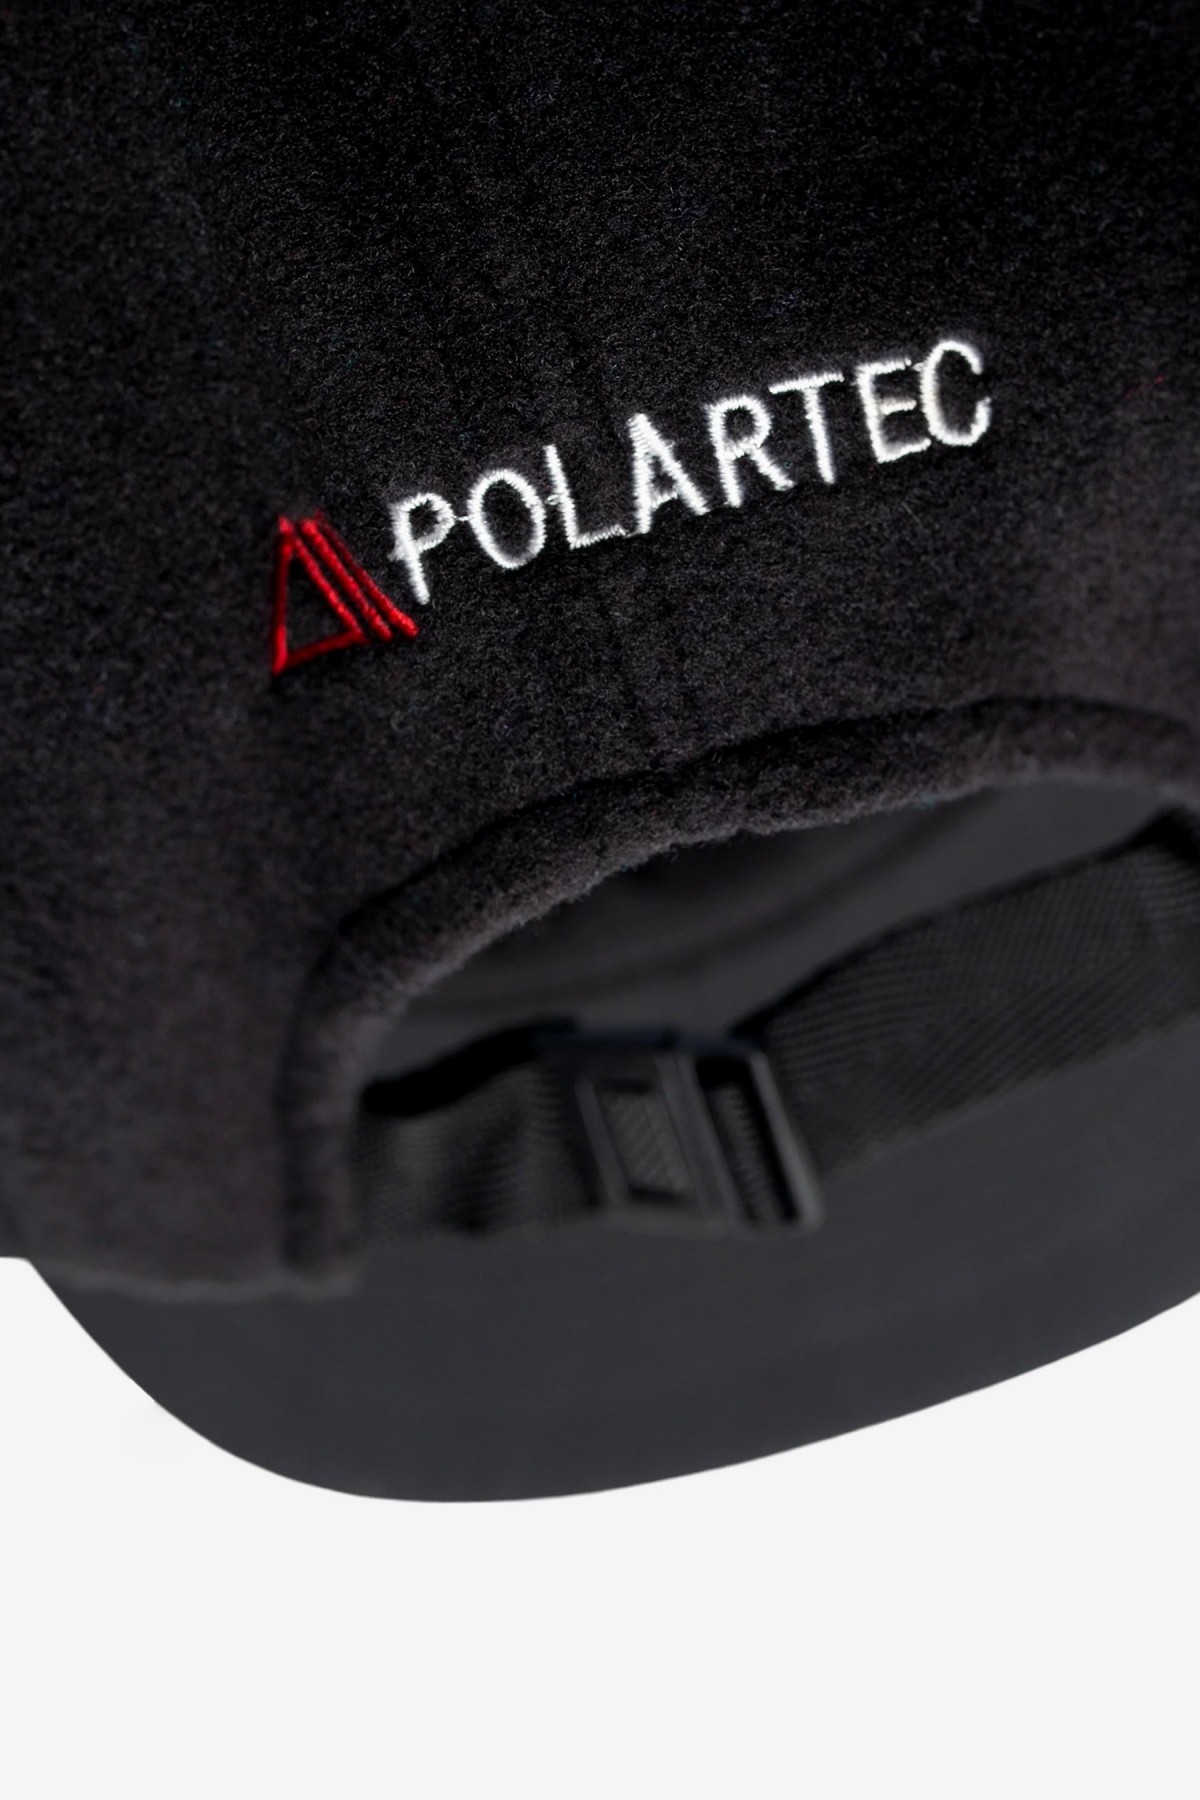 Manastash Polartec Cap in Black